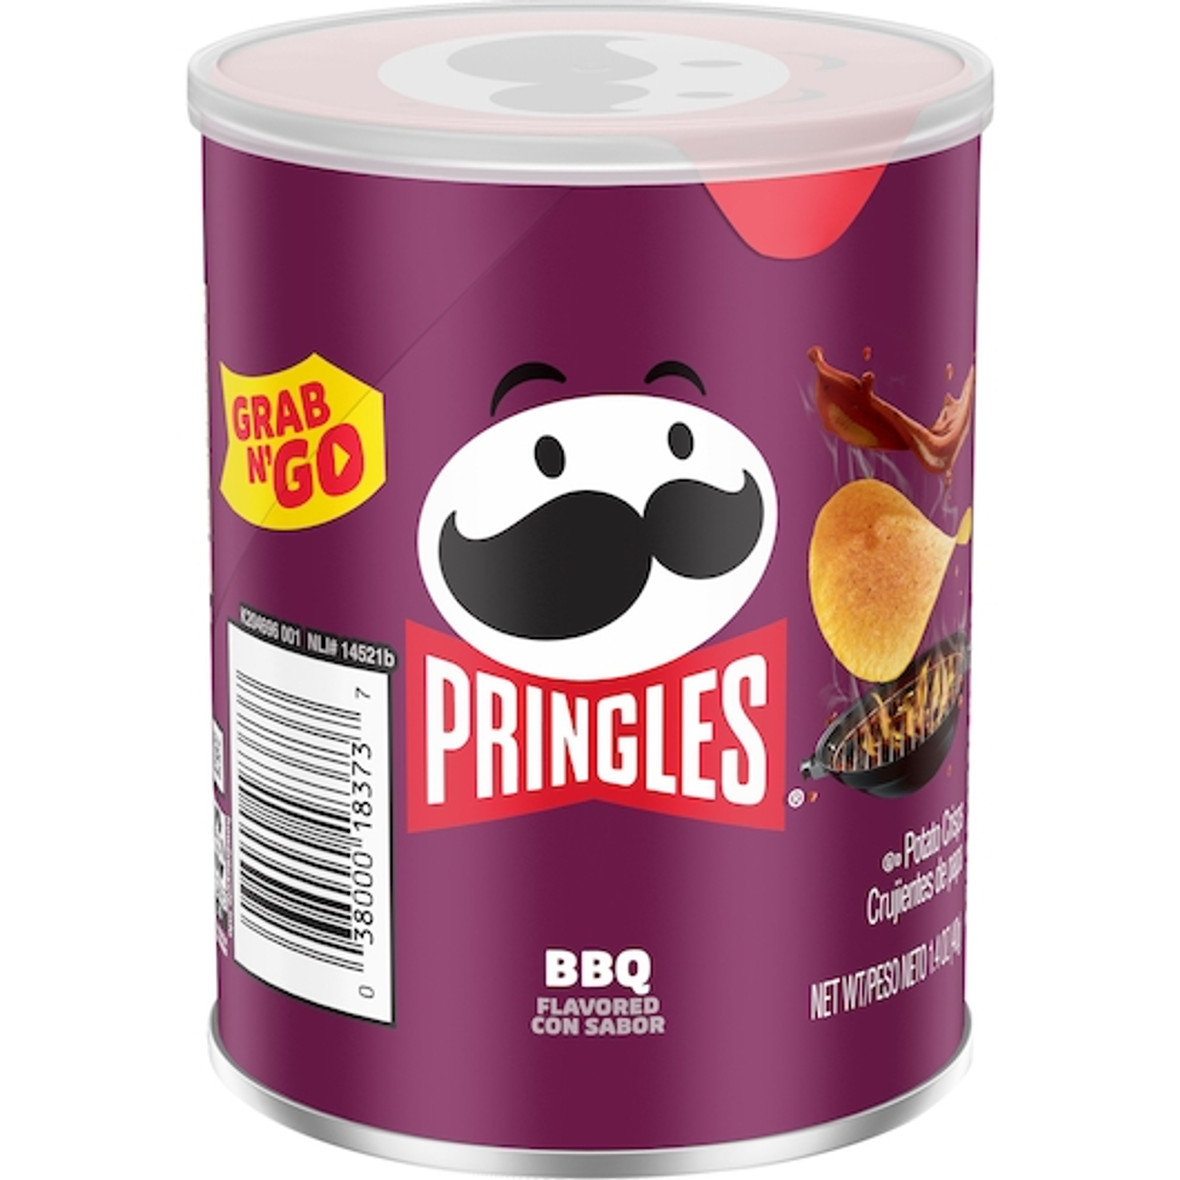 Pringles Bbq Potato Crisp, 1.4 Ounces, 12 Per Case